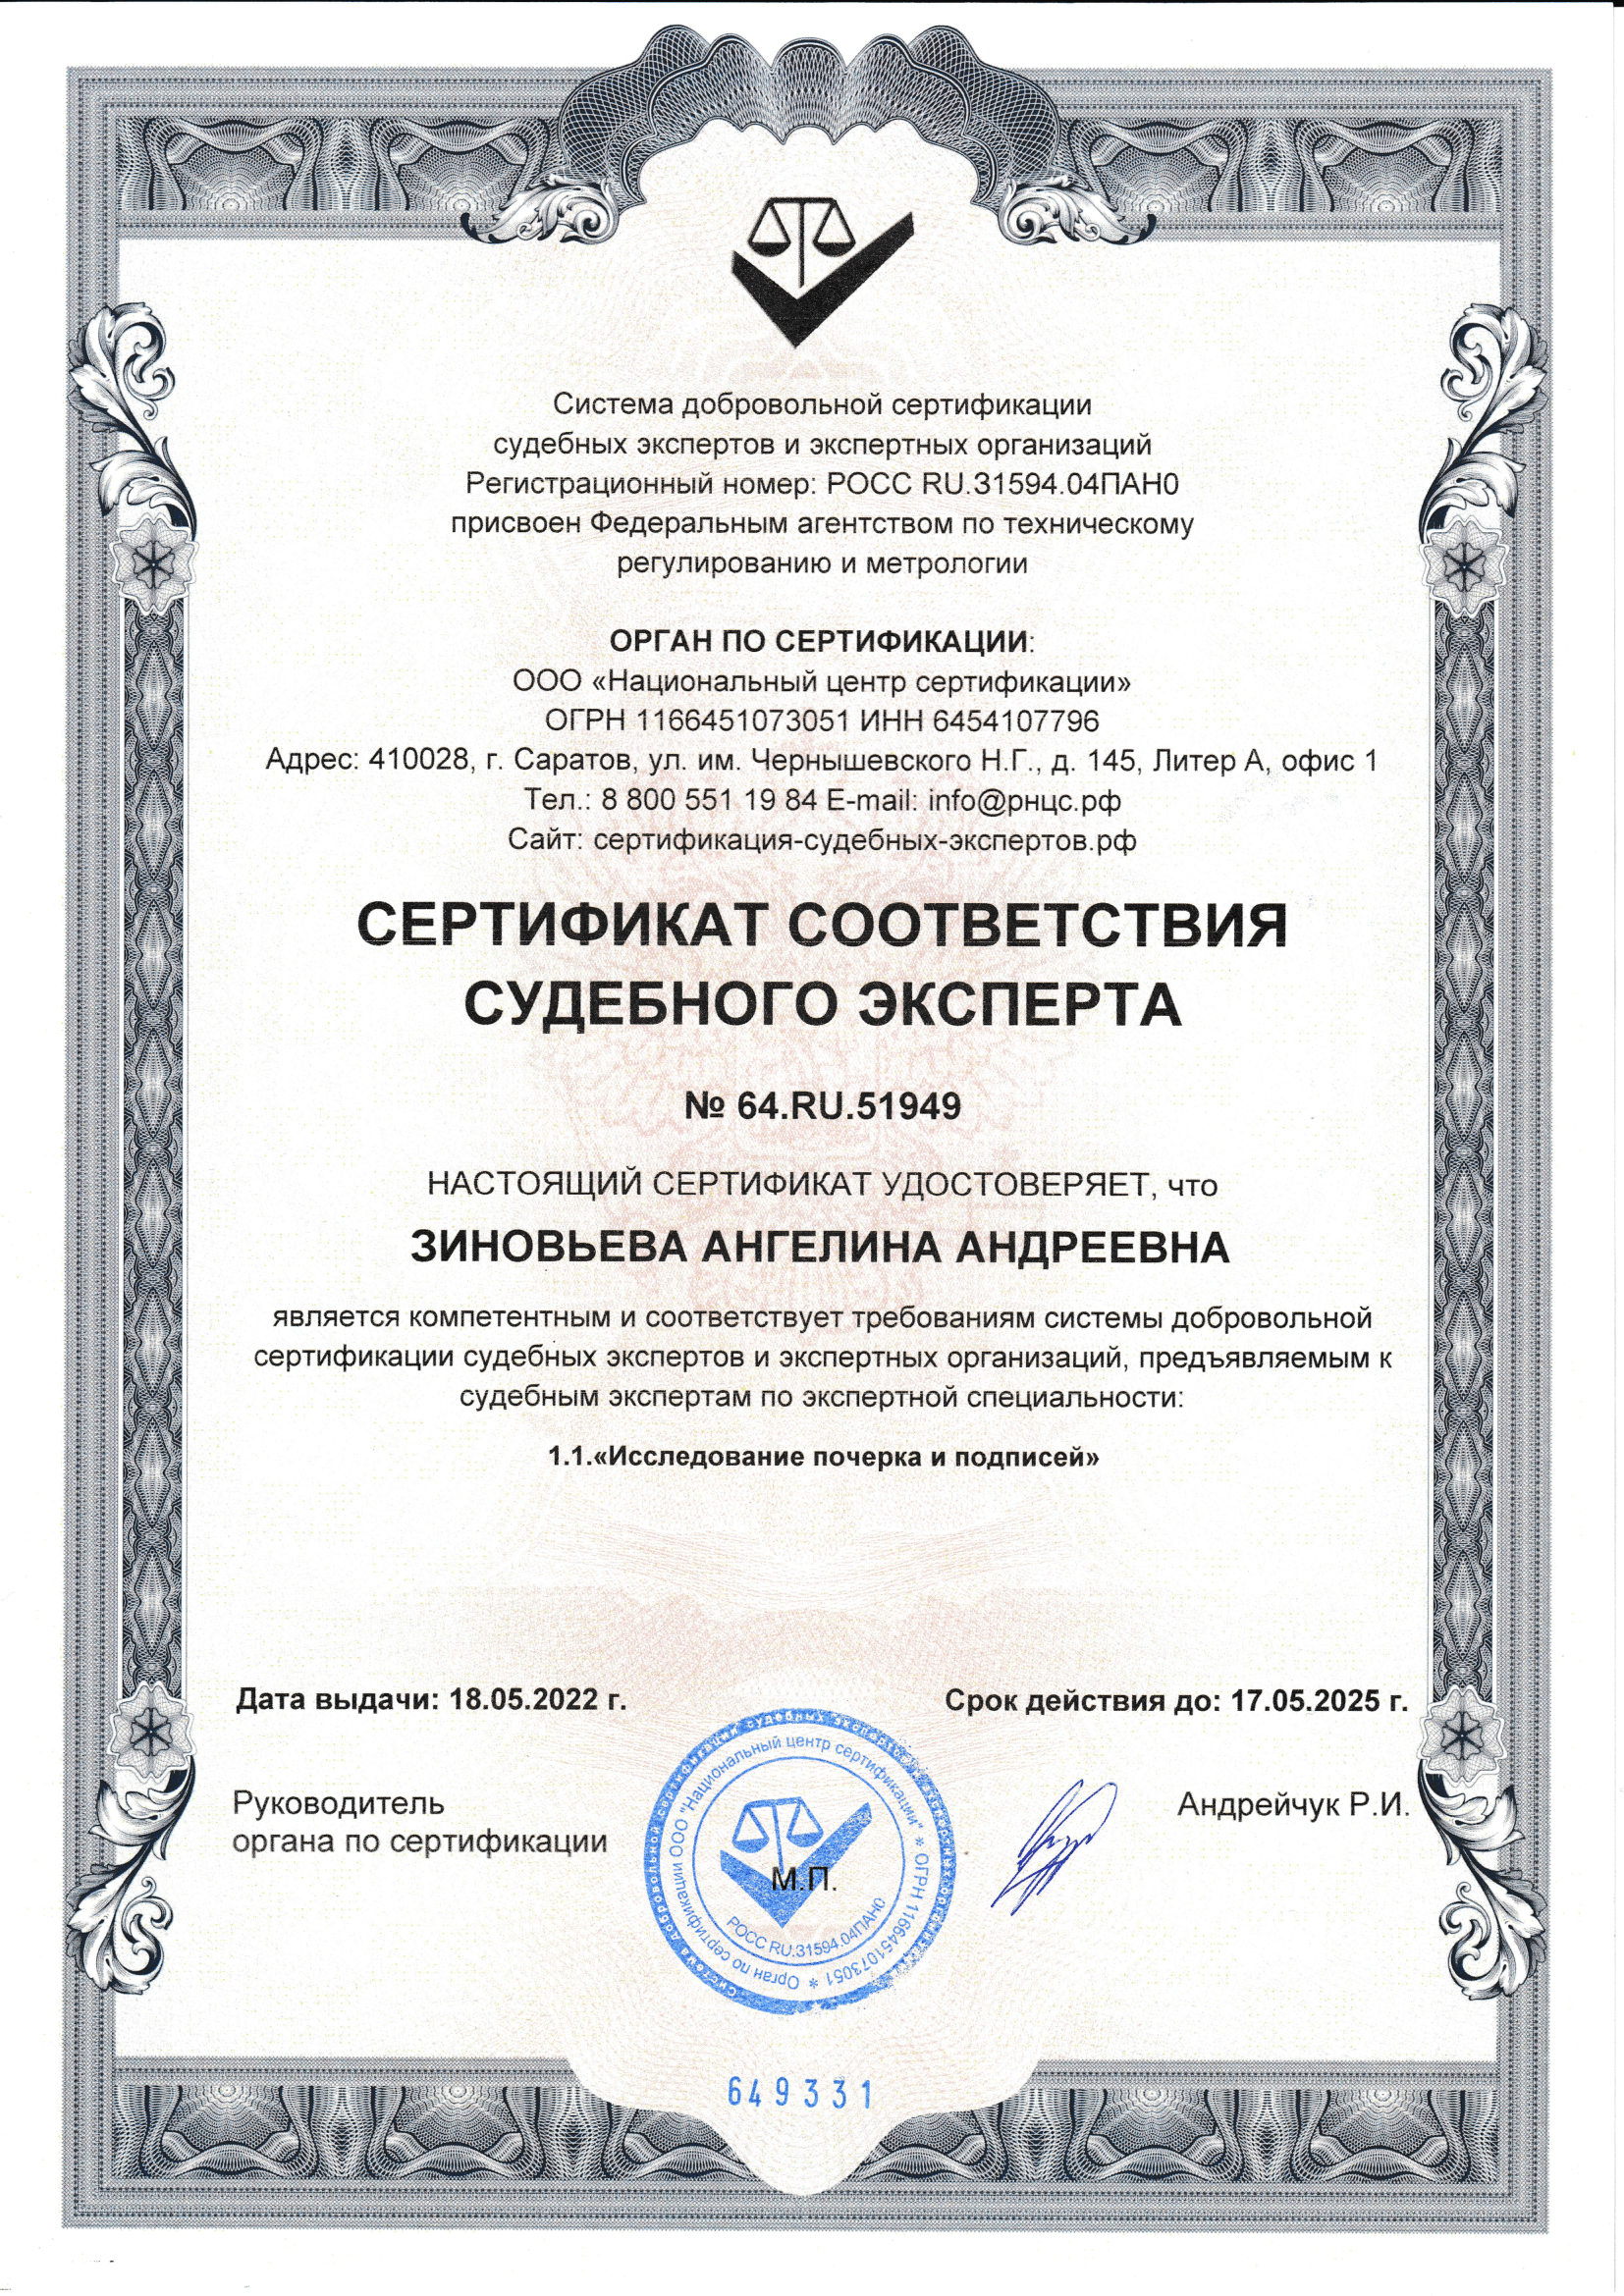 Сертификат соответствия в области исследование почерка и подписей